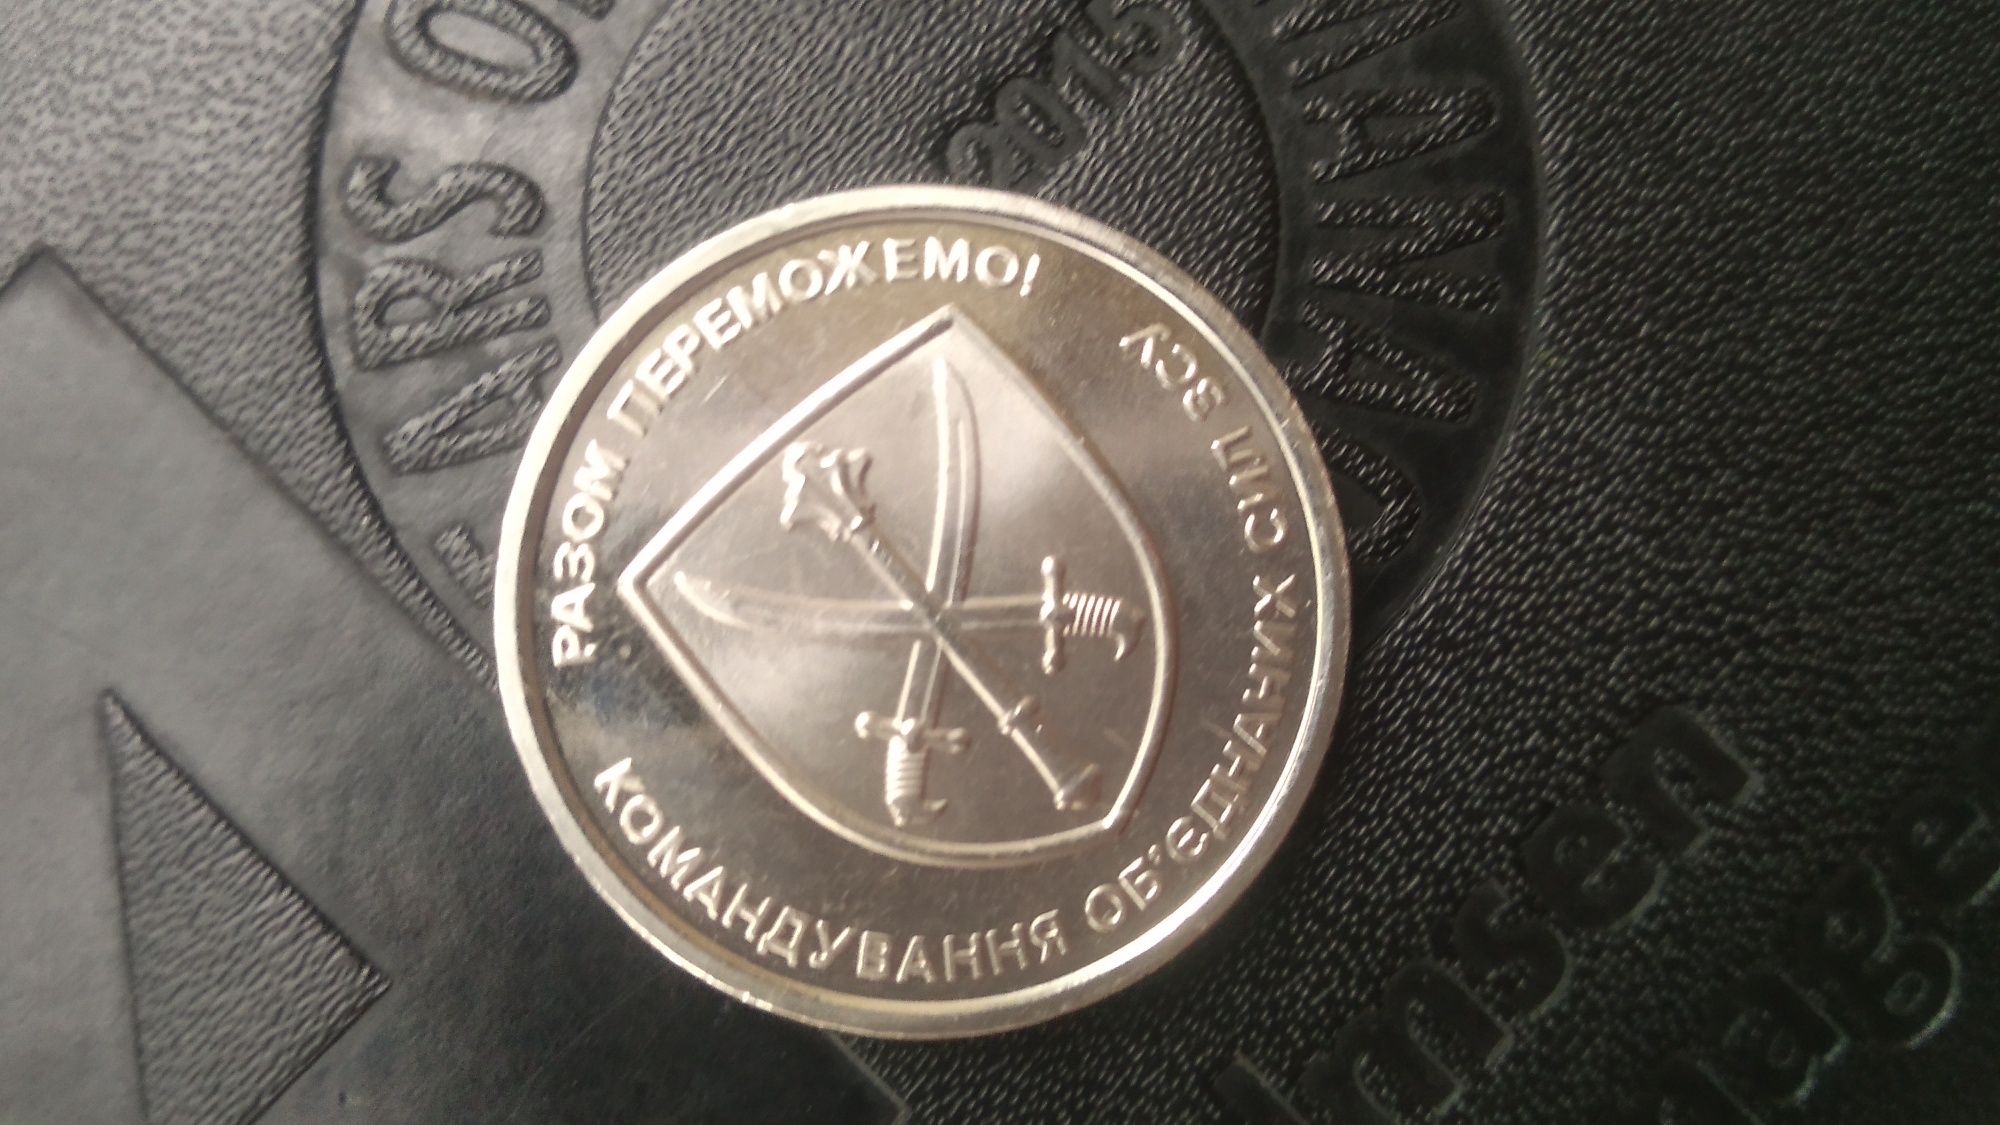 Рідкісна монета ЗСУ "командування обьеднаних сил зсу" 10 гривень